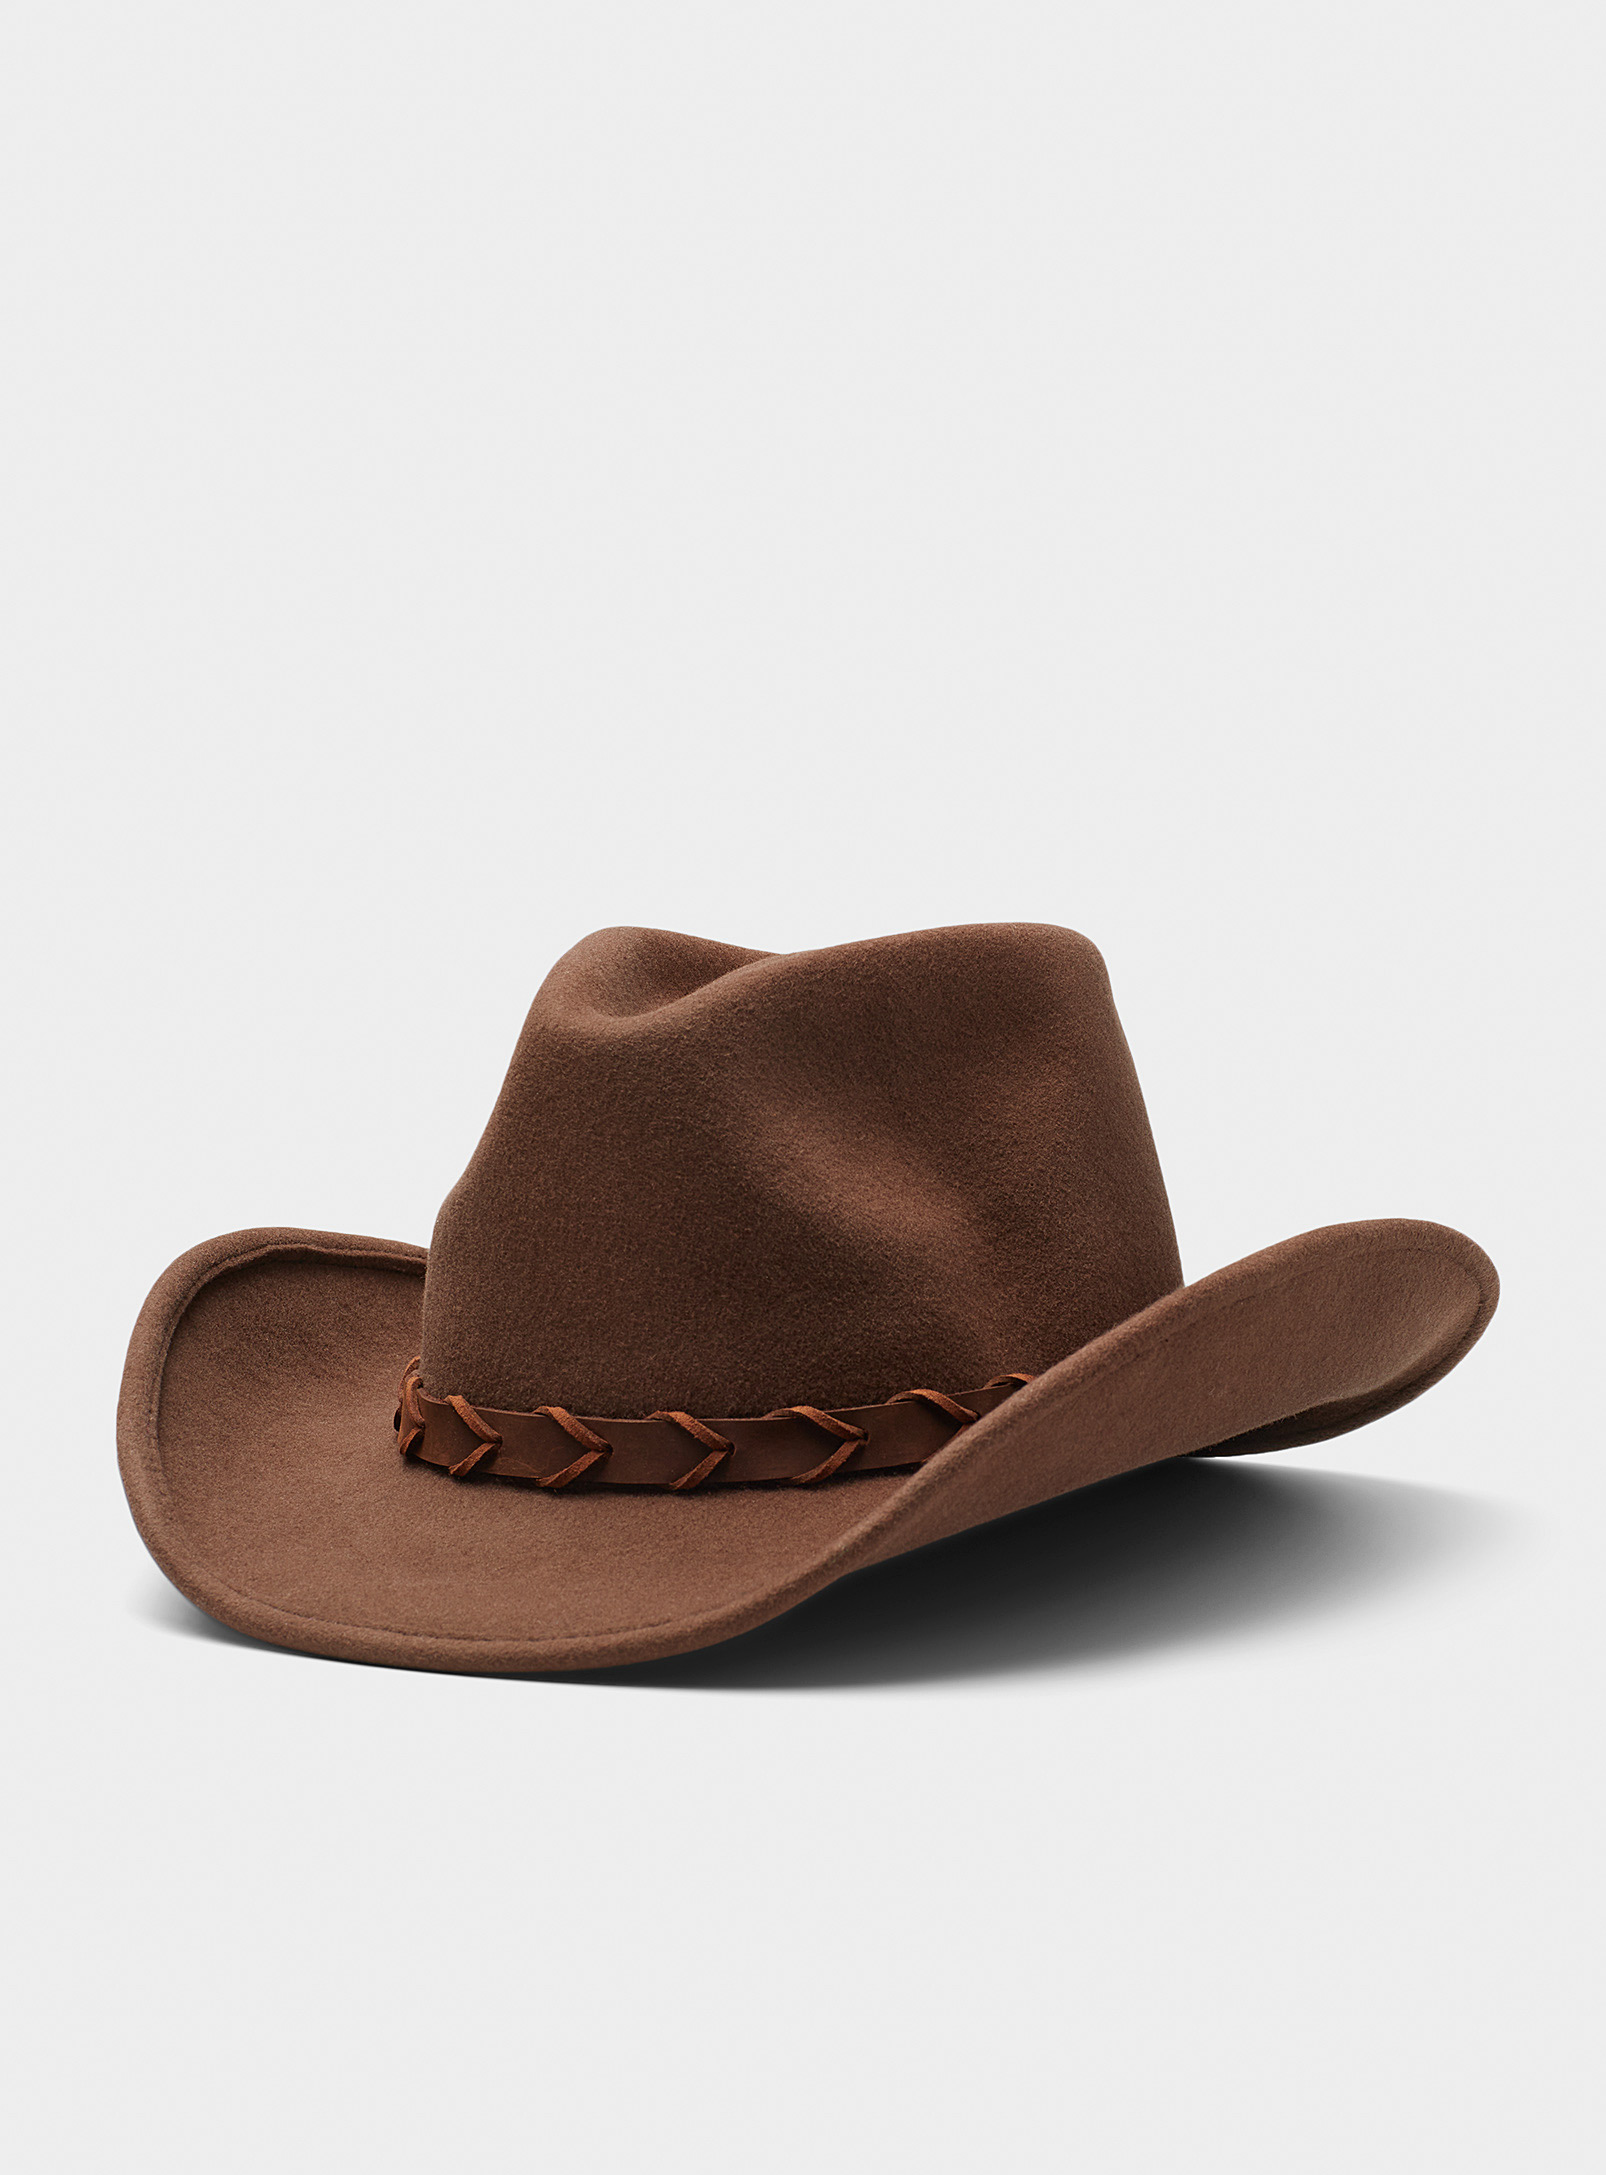 Peter Grimm - Men's Leather band felt cowboy hat